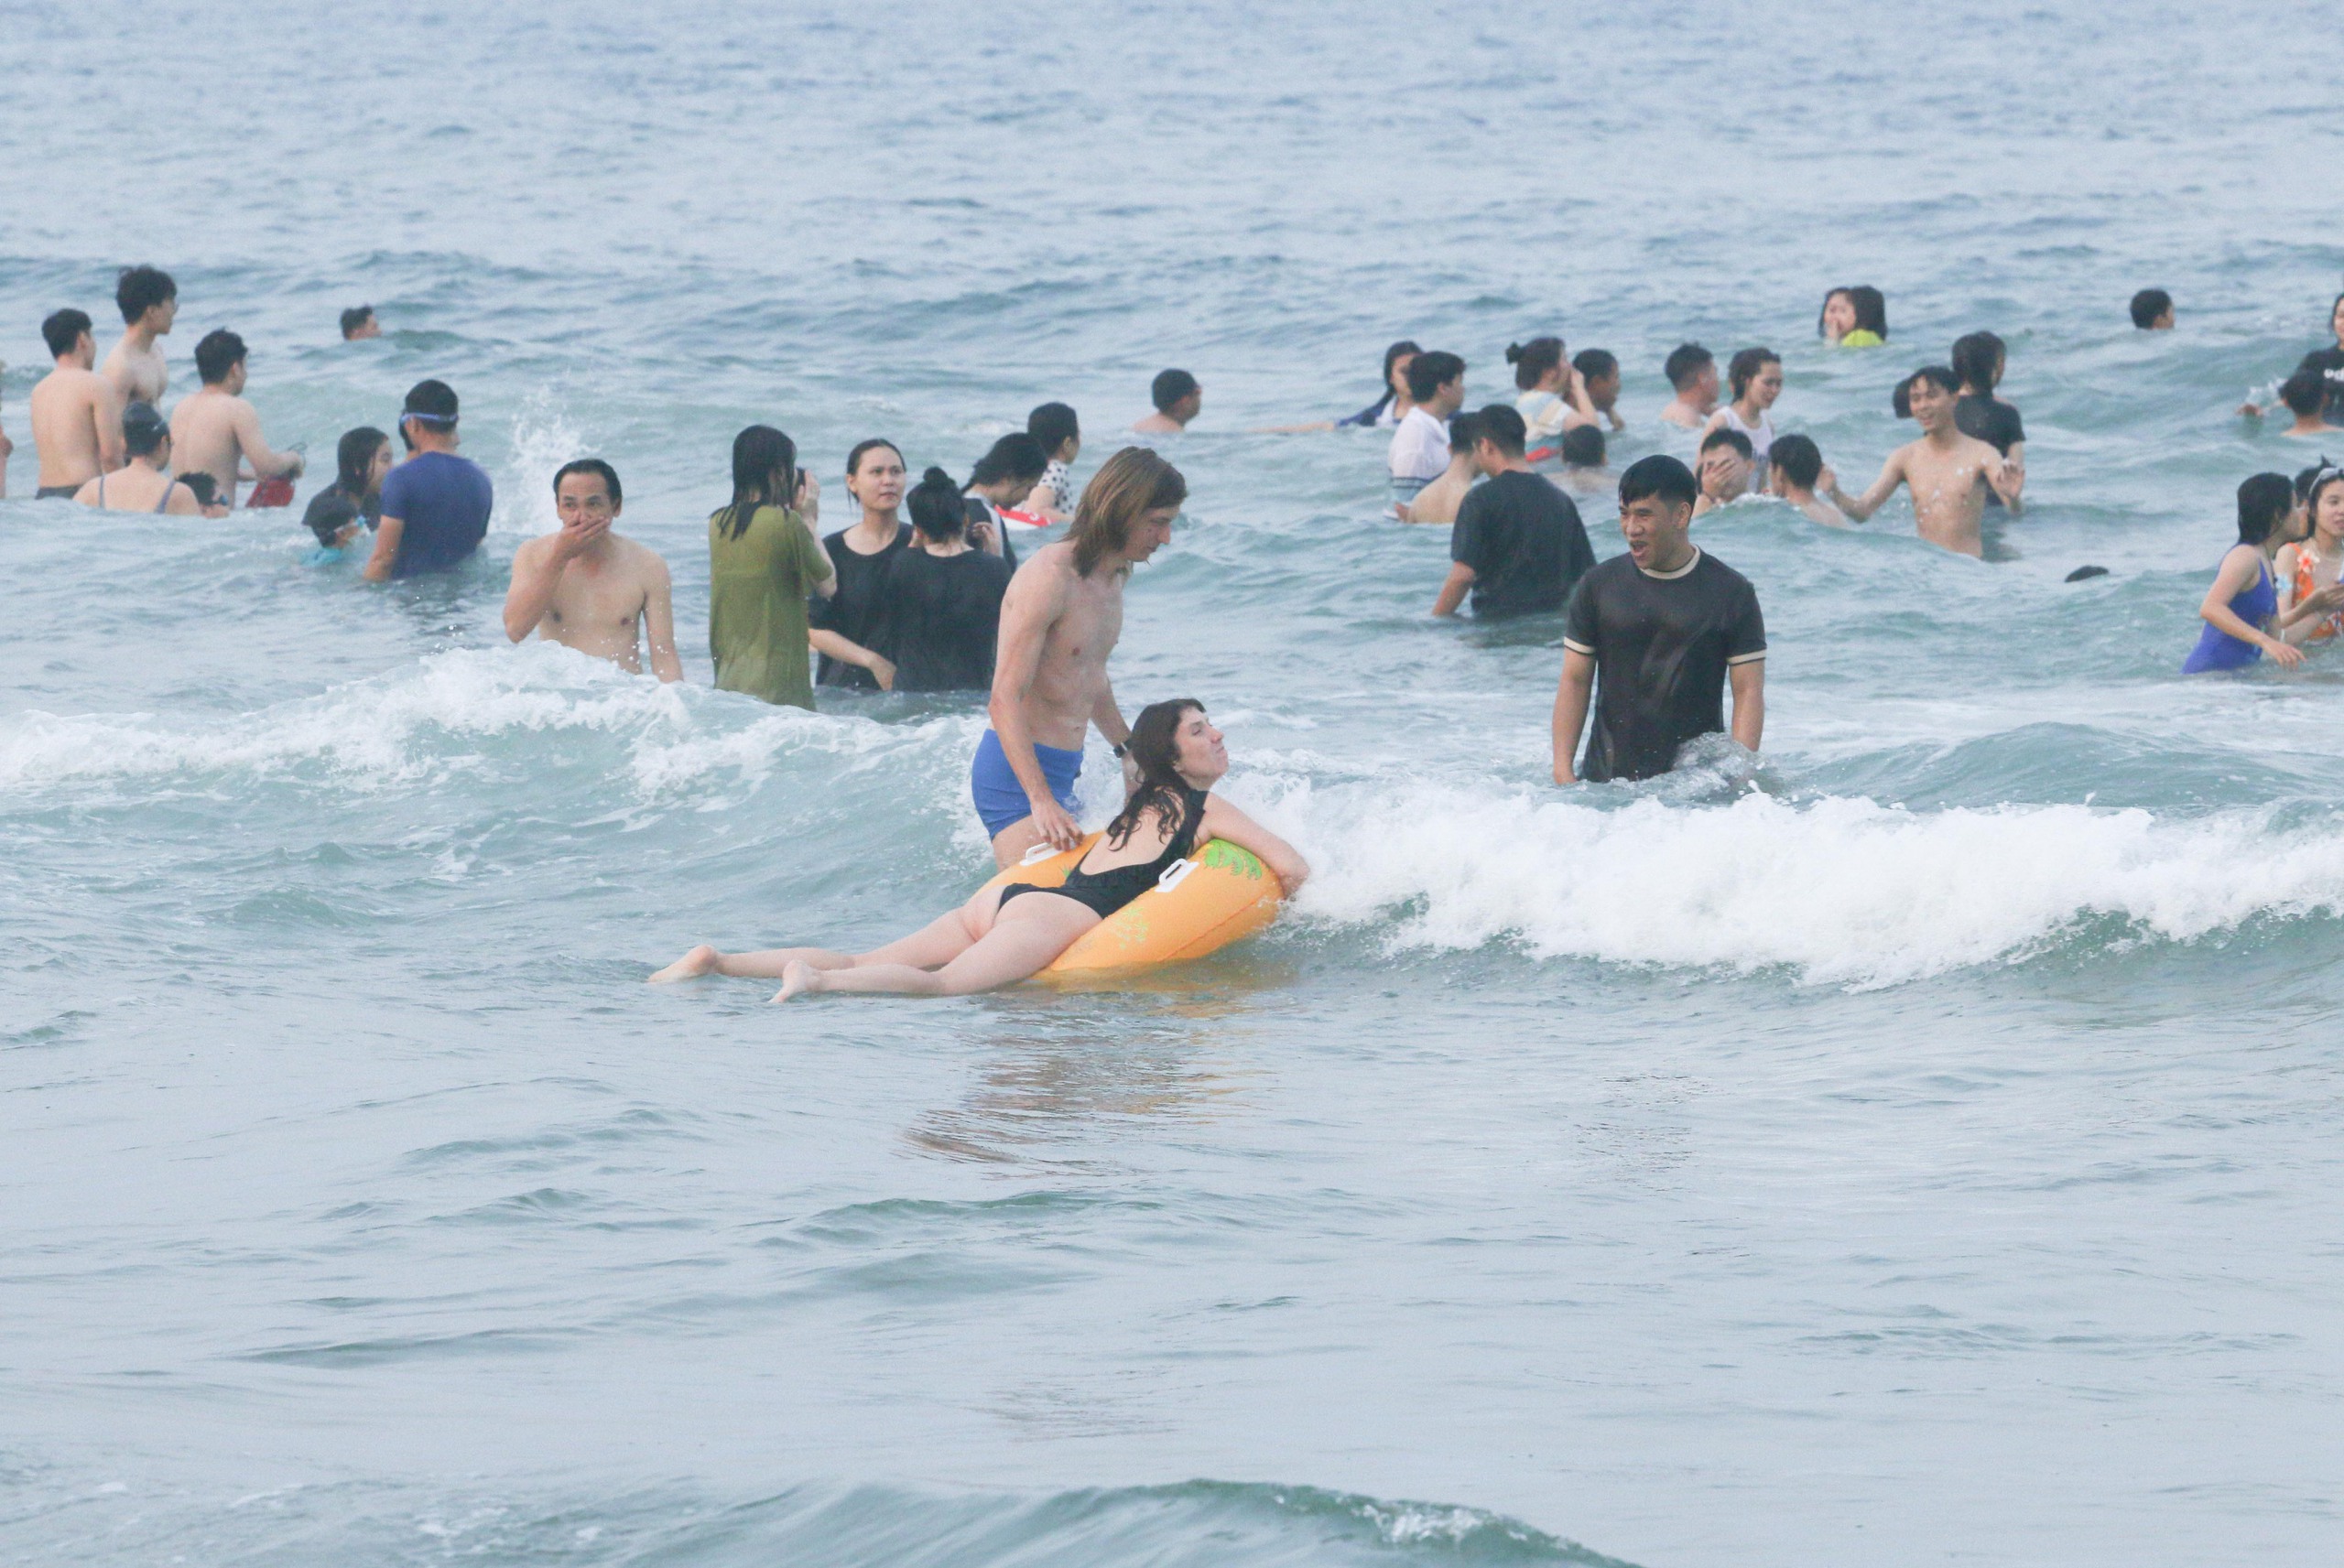 Tại bãi biển khu vực Công viên Biển Đông (Q.Sơn Trà), từ khoảng 16 giờ đã có đông đảo người dân và du khách kéo về đây để được ngâm mình vào dòng nước biển mát lạnh, giải nhiệt nắng nóng